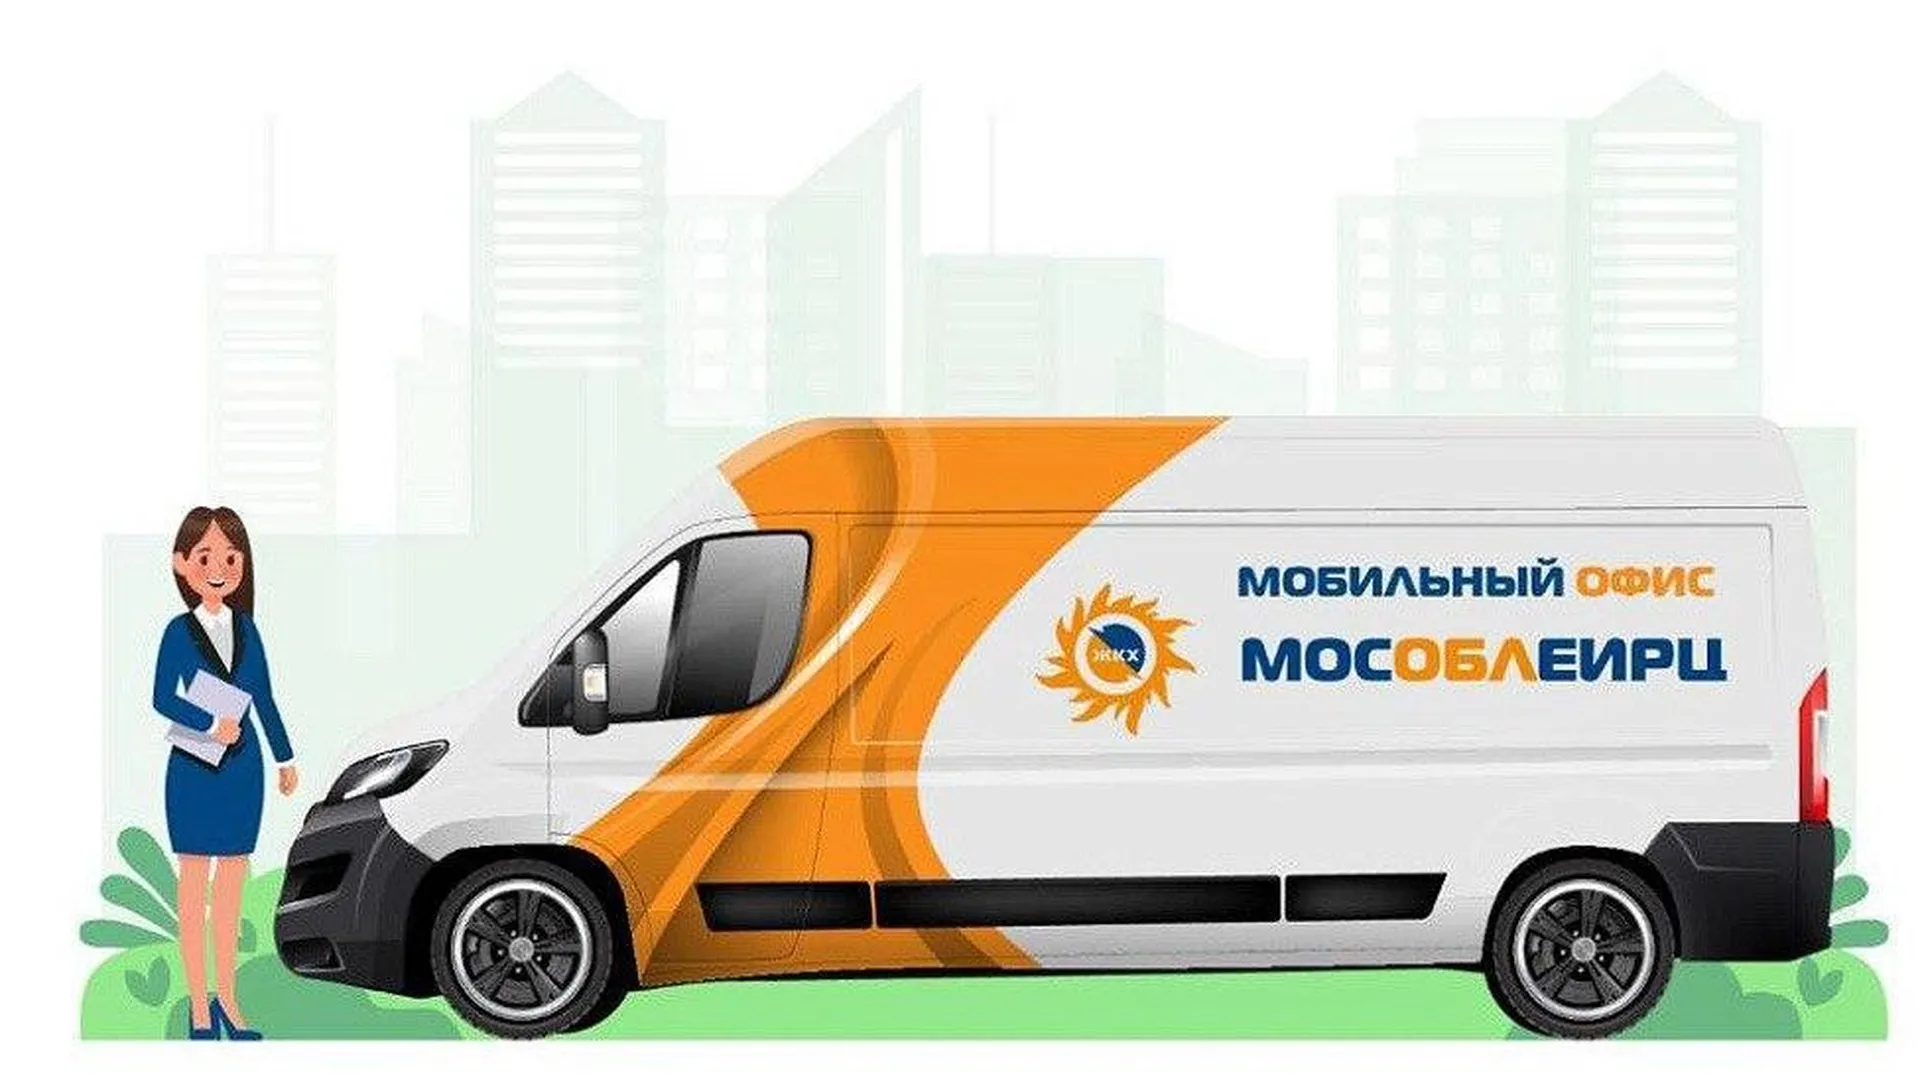 Стал известен график работы мобильного офиса МосОблЕИРЦ в феврале